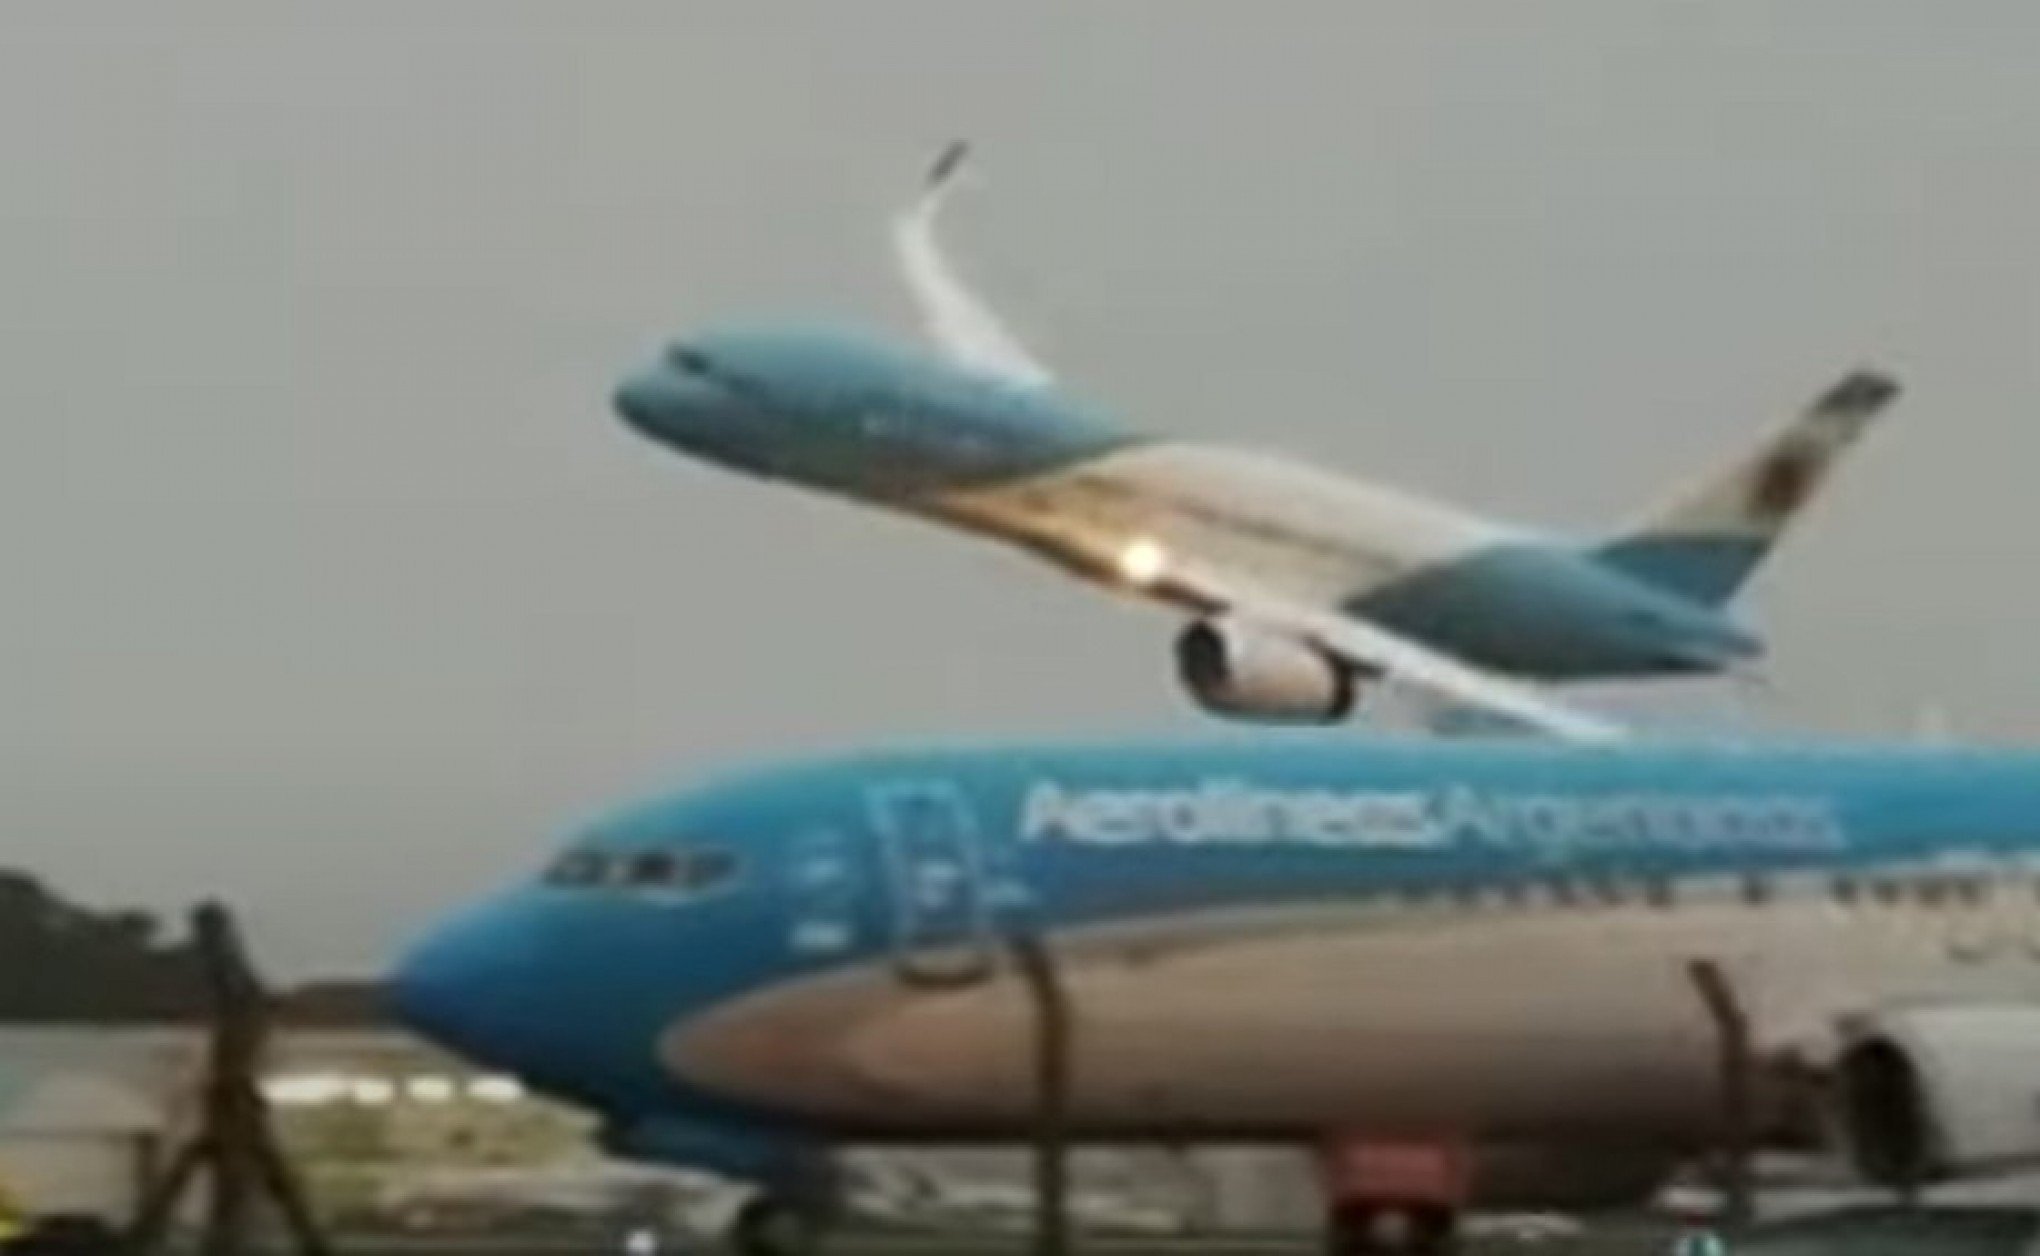 VÍDEO: Com economia em crise, governo argentino compra novo avião presidencial e piloto surpreende na chegada